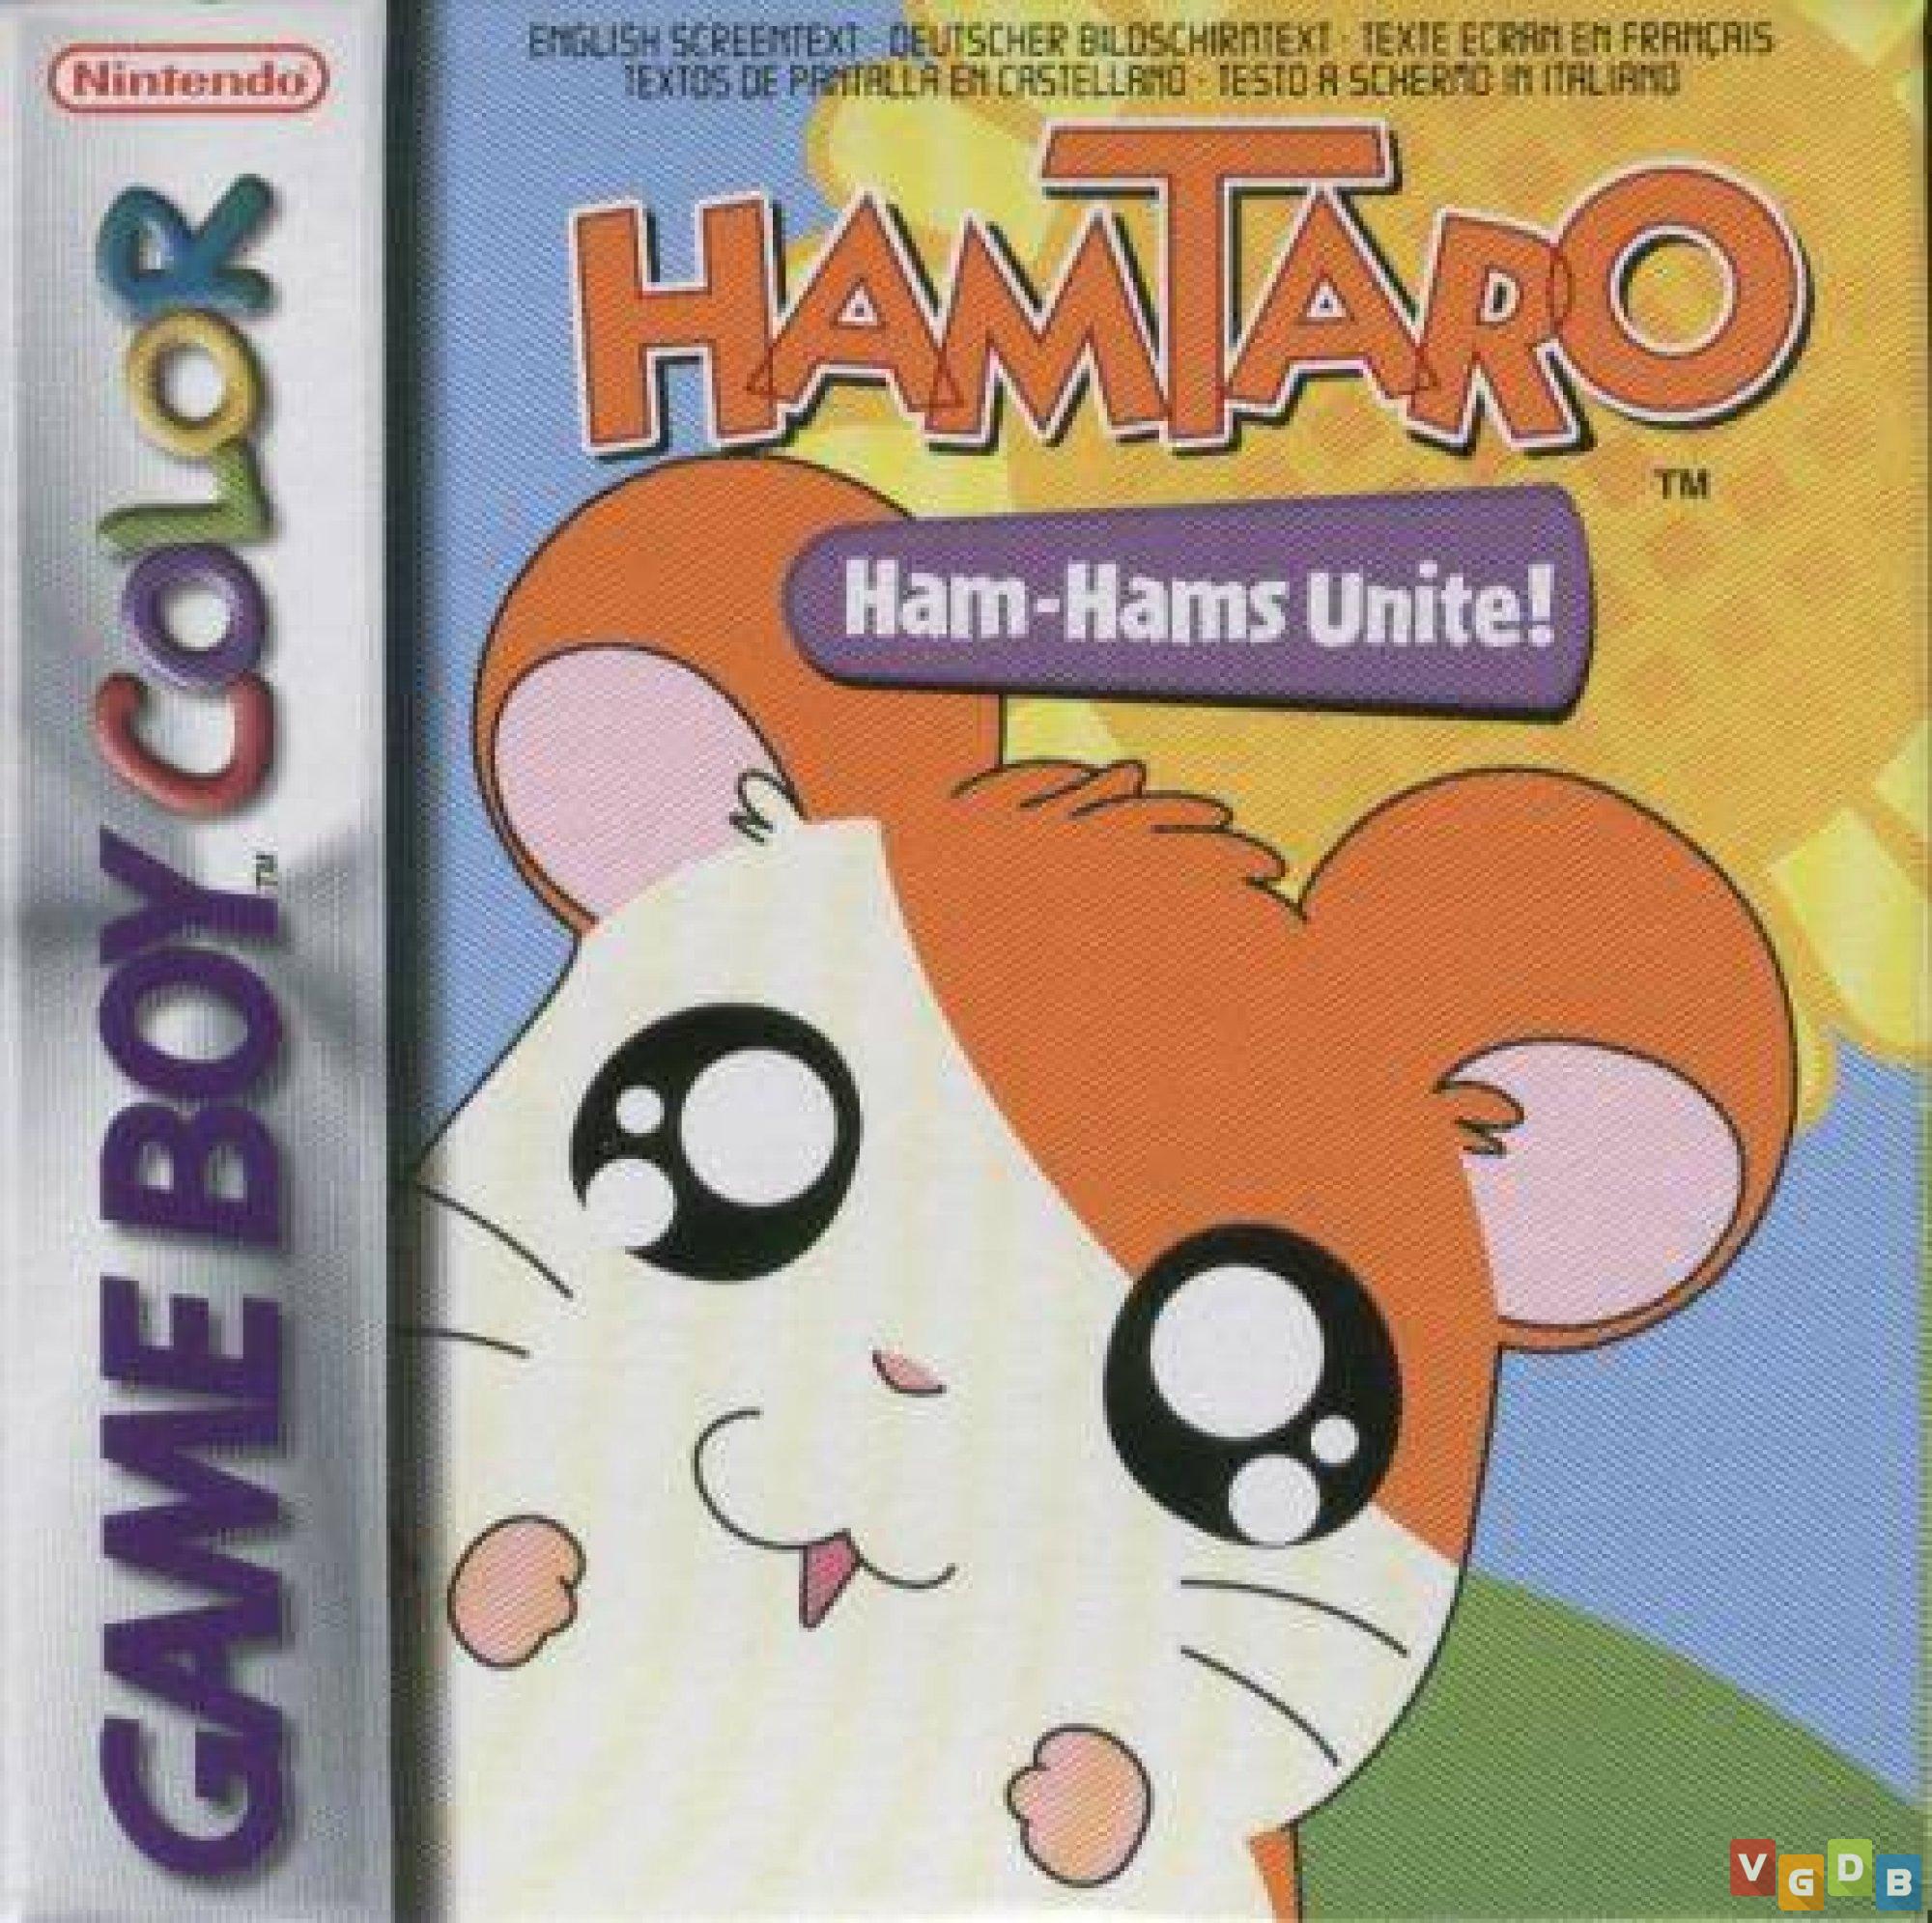 7 curiosidades que você não sabia sobre Hamtaro